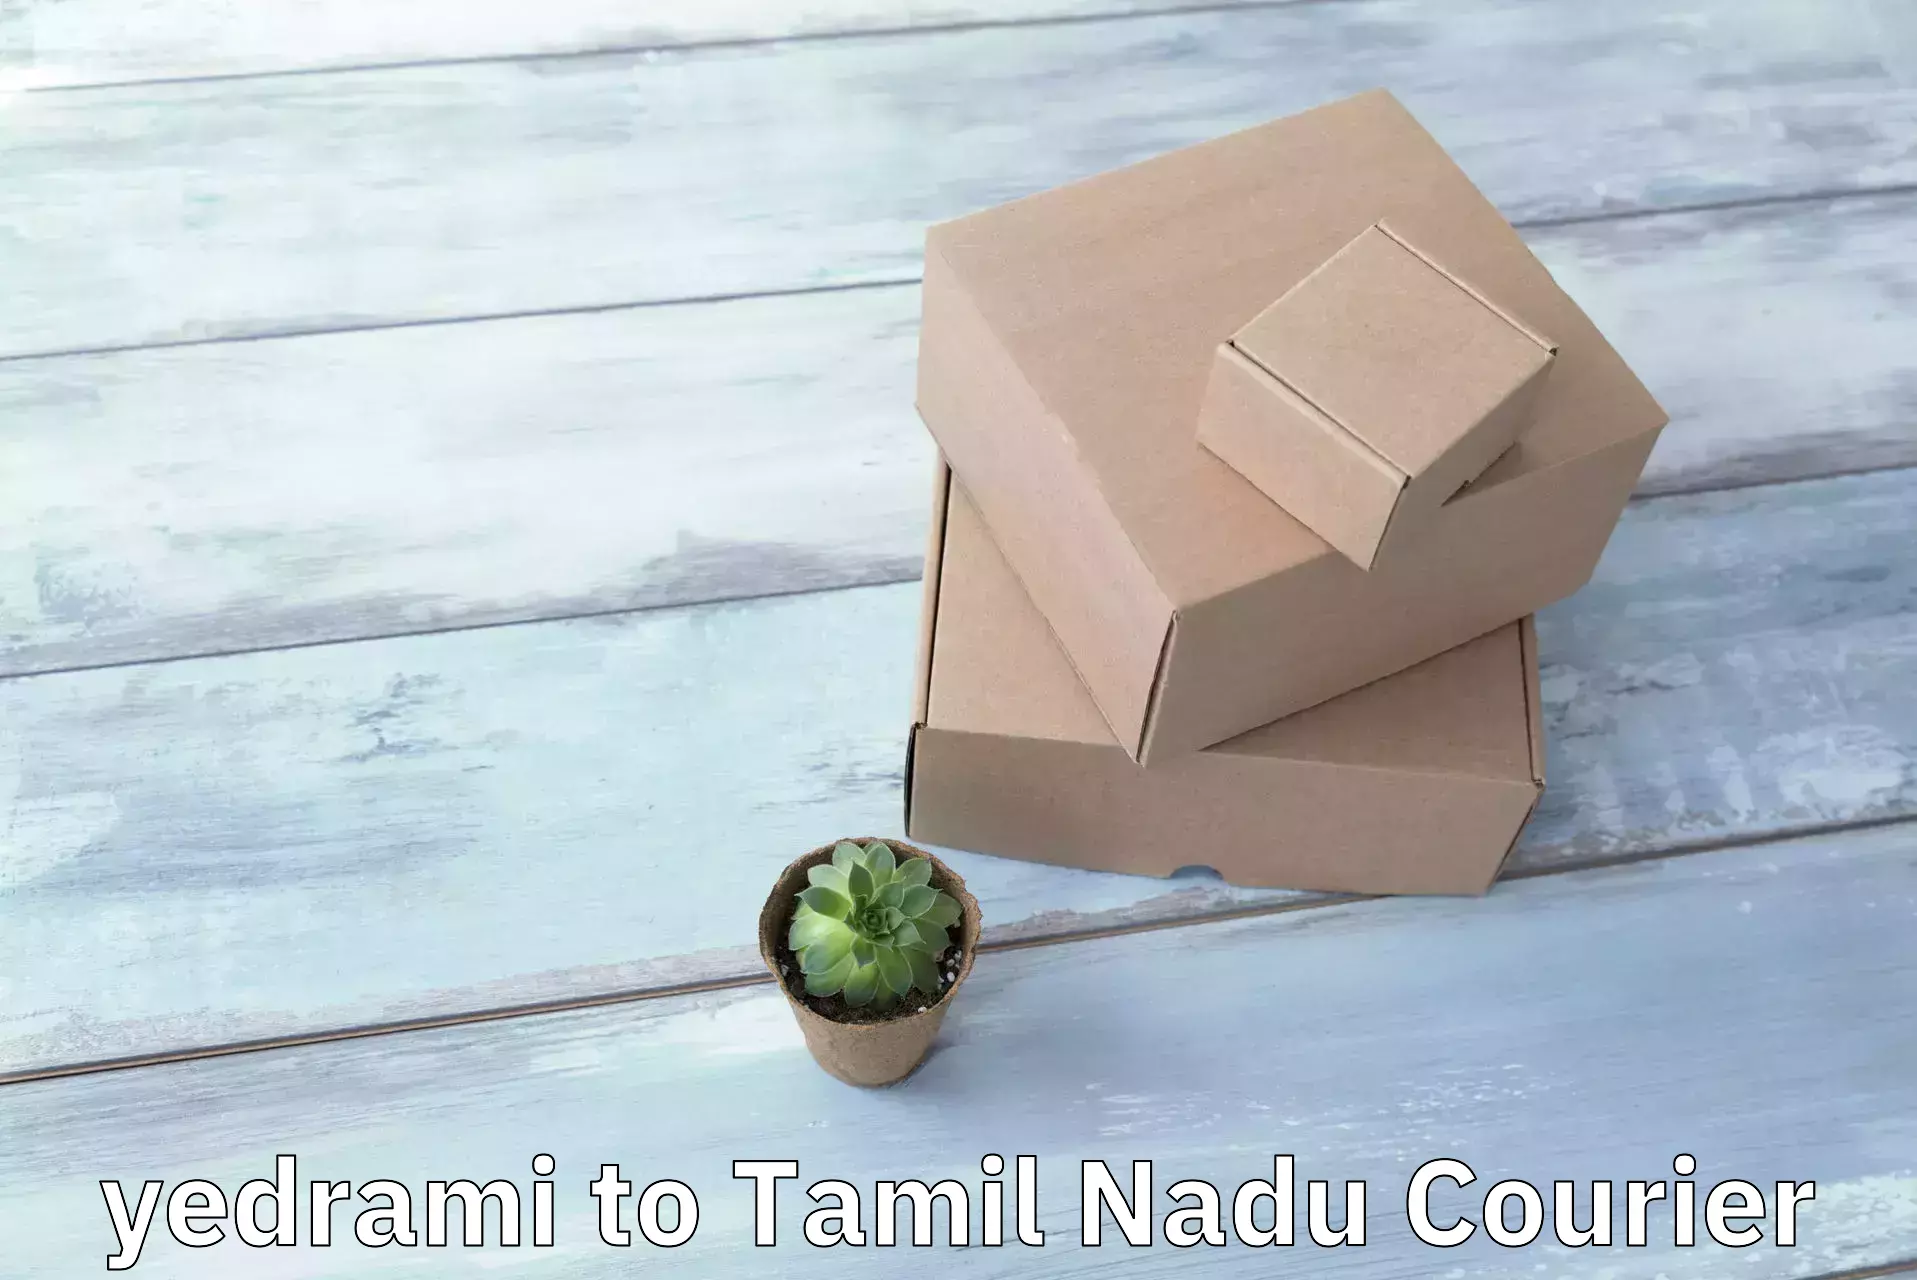 Custom courier packages yedrami to Tiruchendur